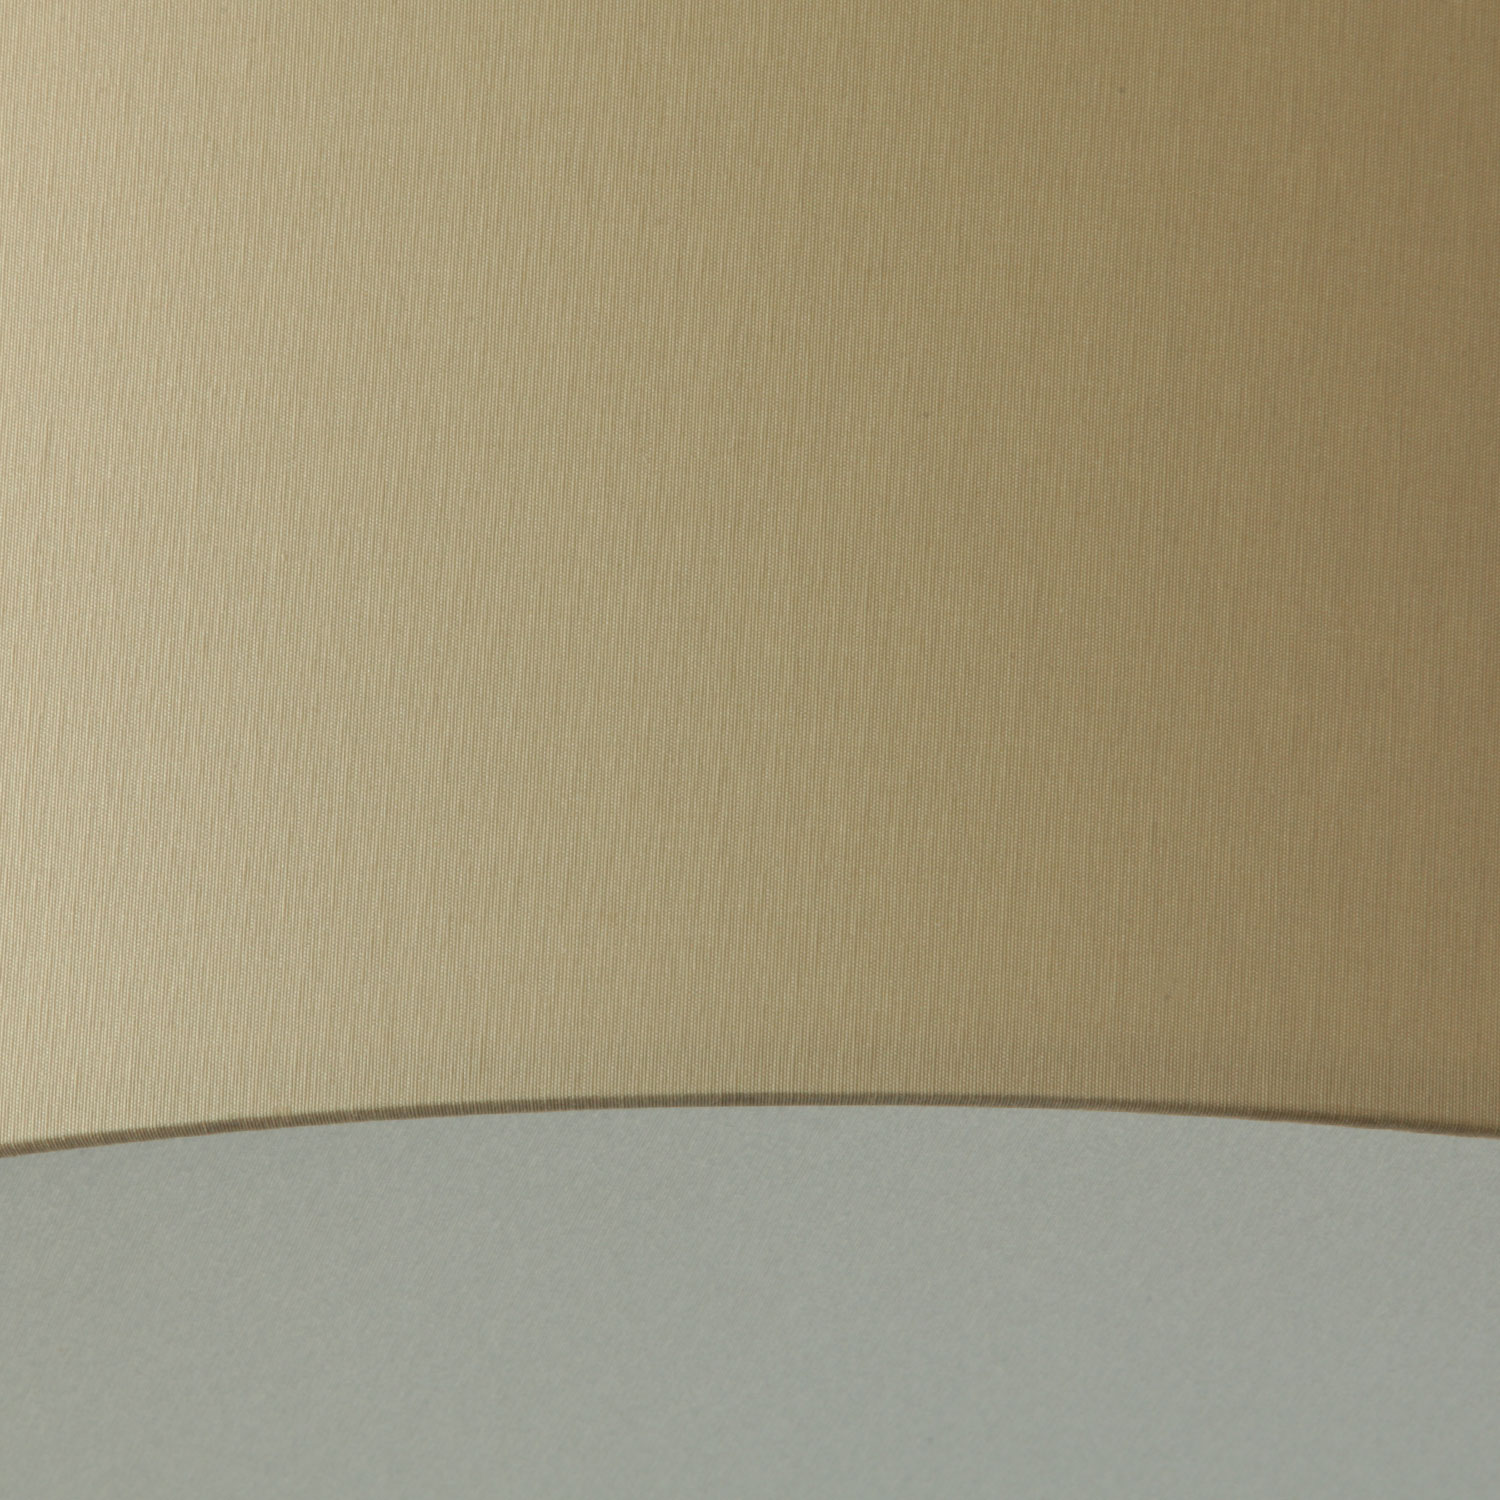 Verstellbare Pendelleuchte VITA P mit edlem Textilschirm, Ø 60 cm: Detail „Sand“